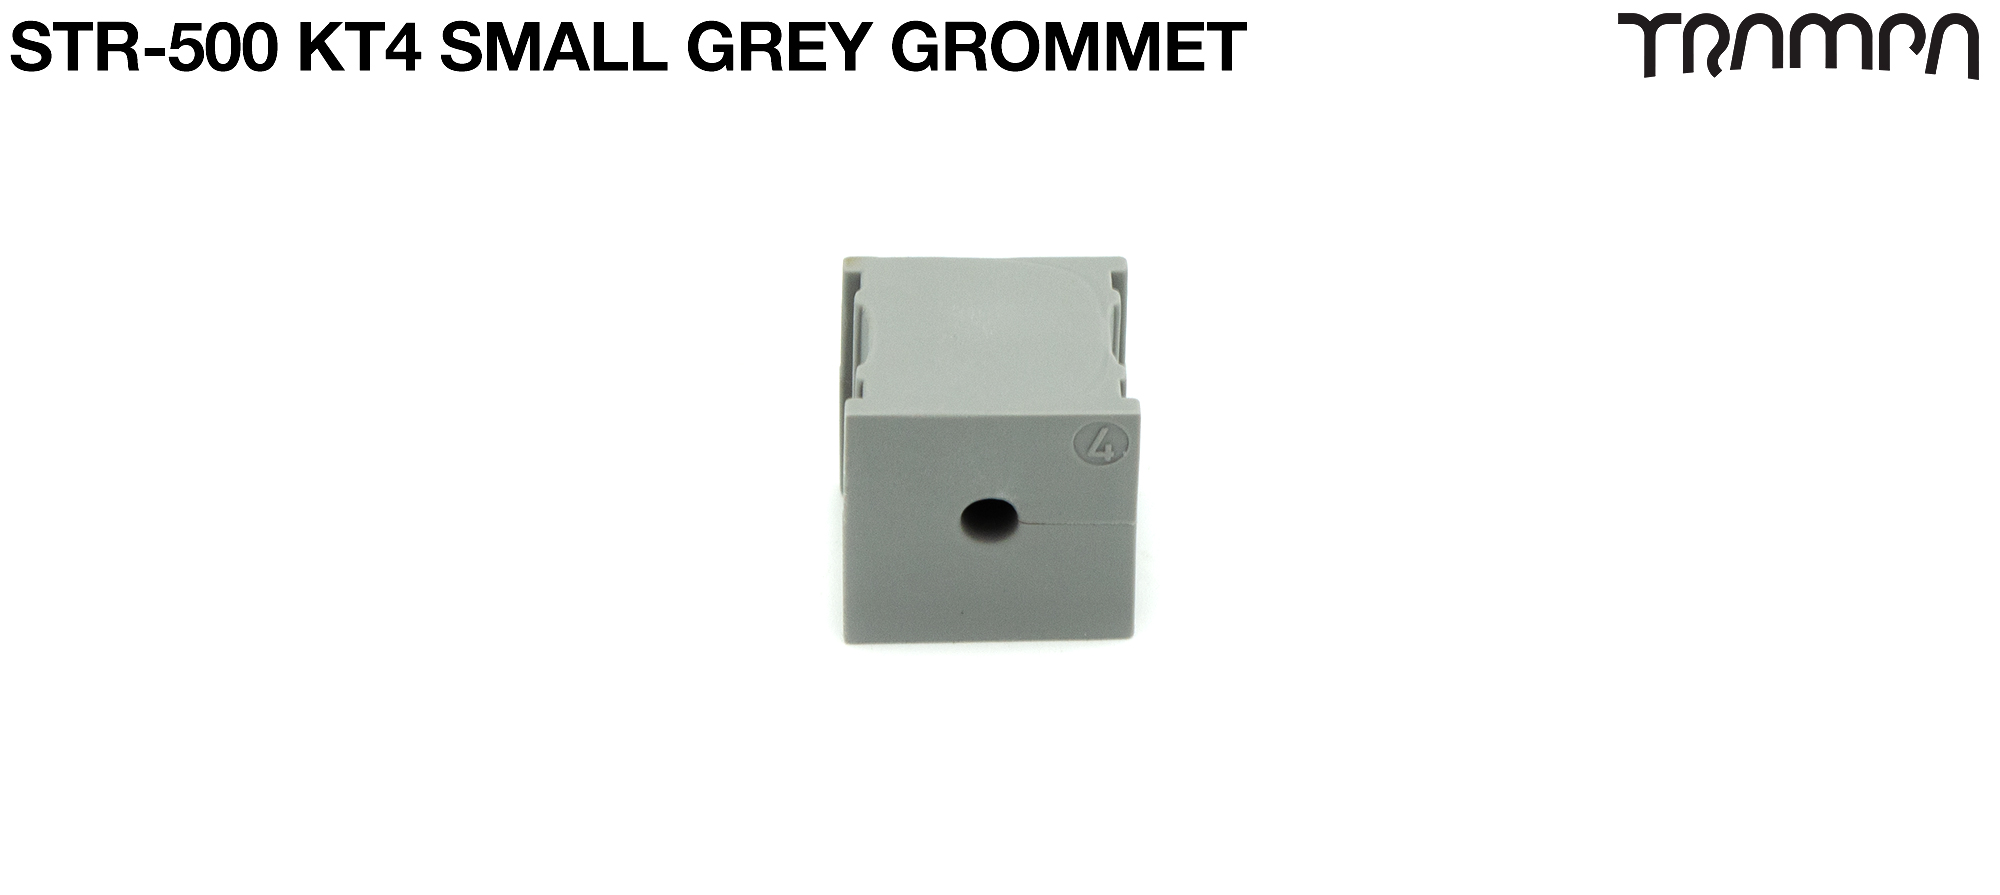 KT4 Small Grey Grommet 